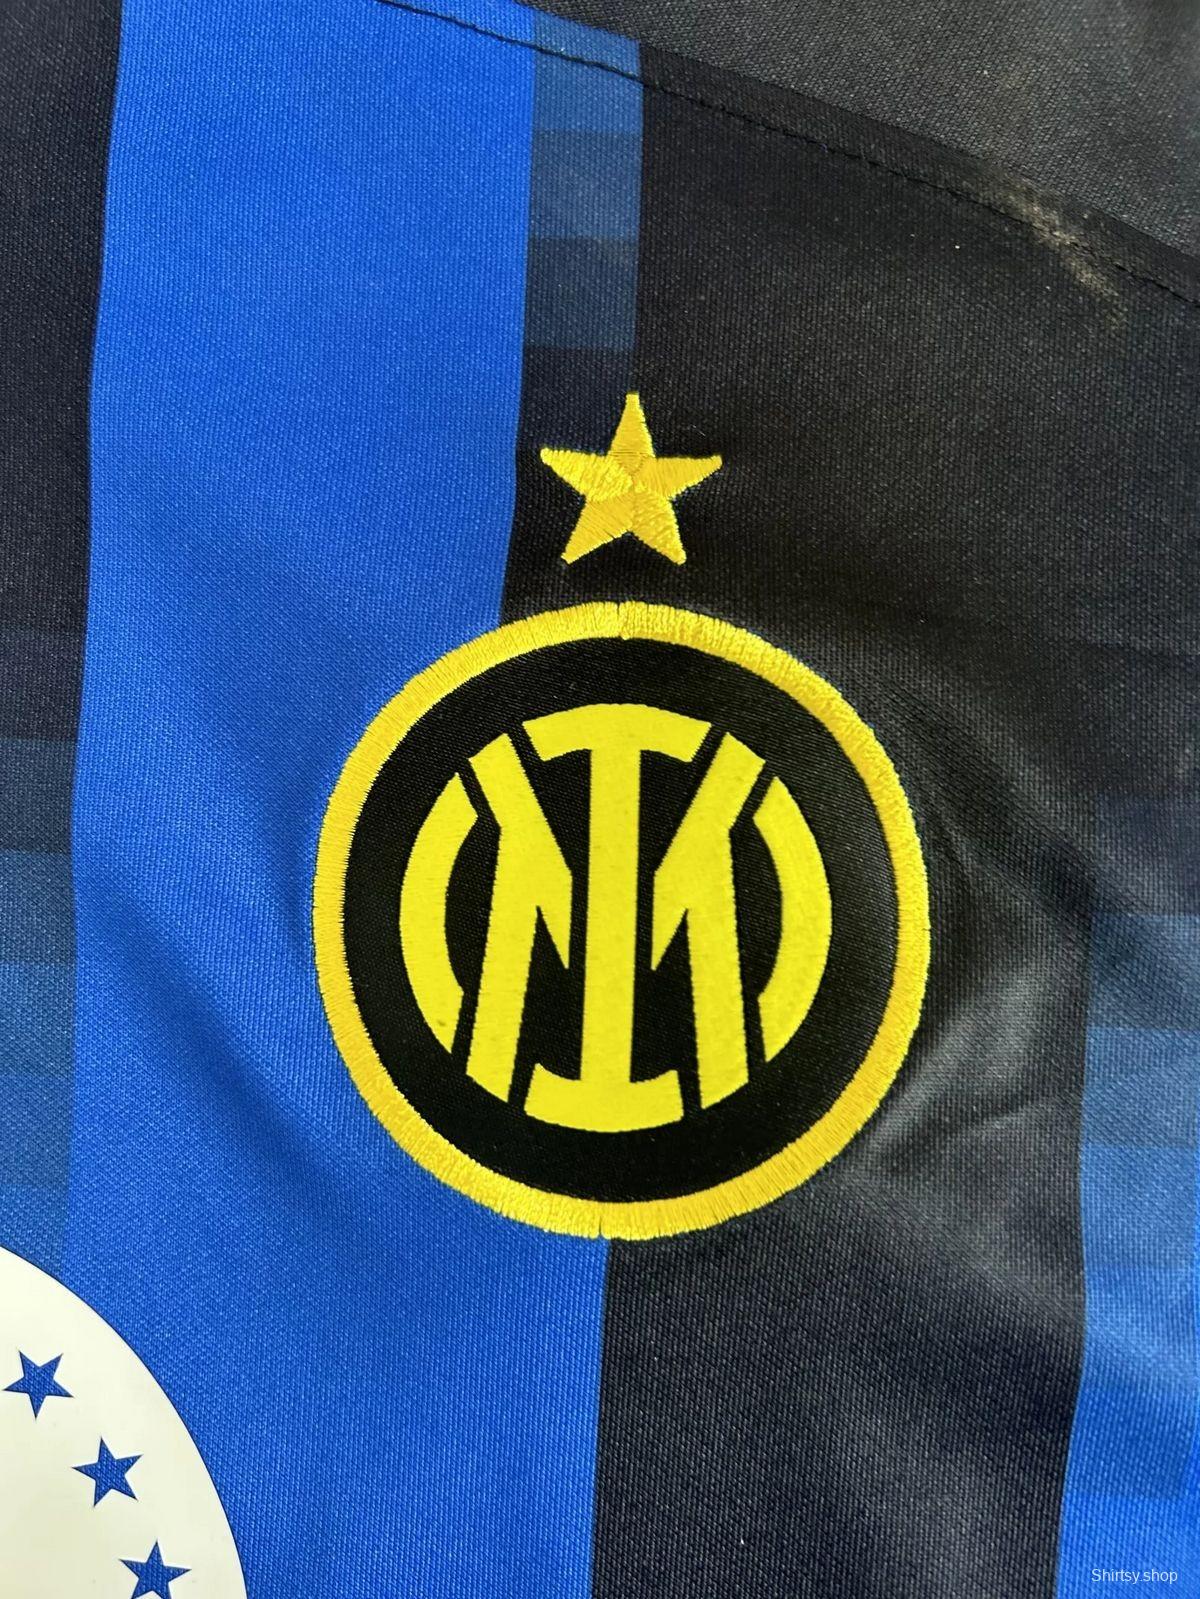 23/24 Inter Milan Home Jersey